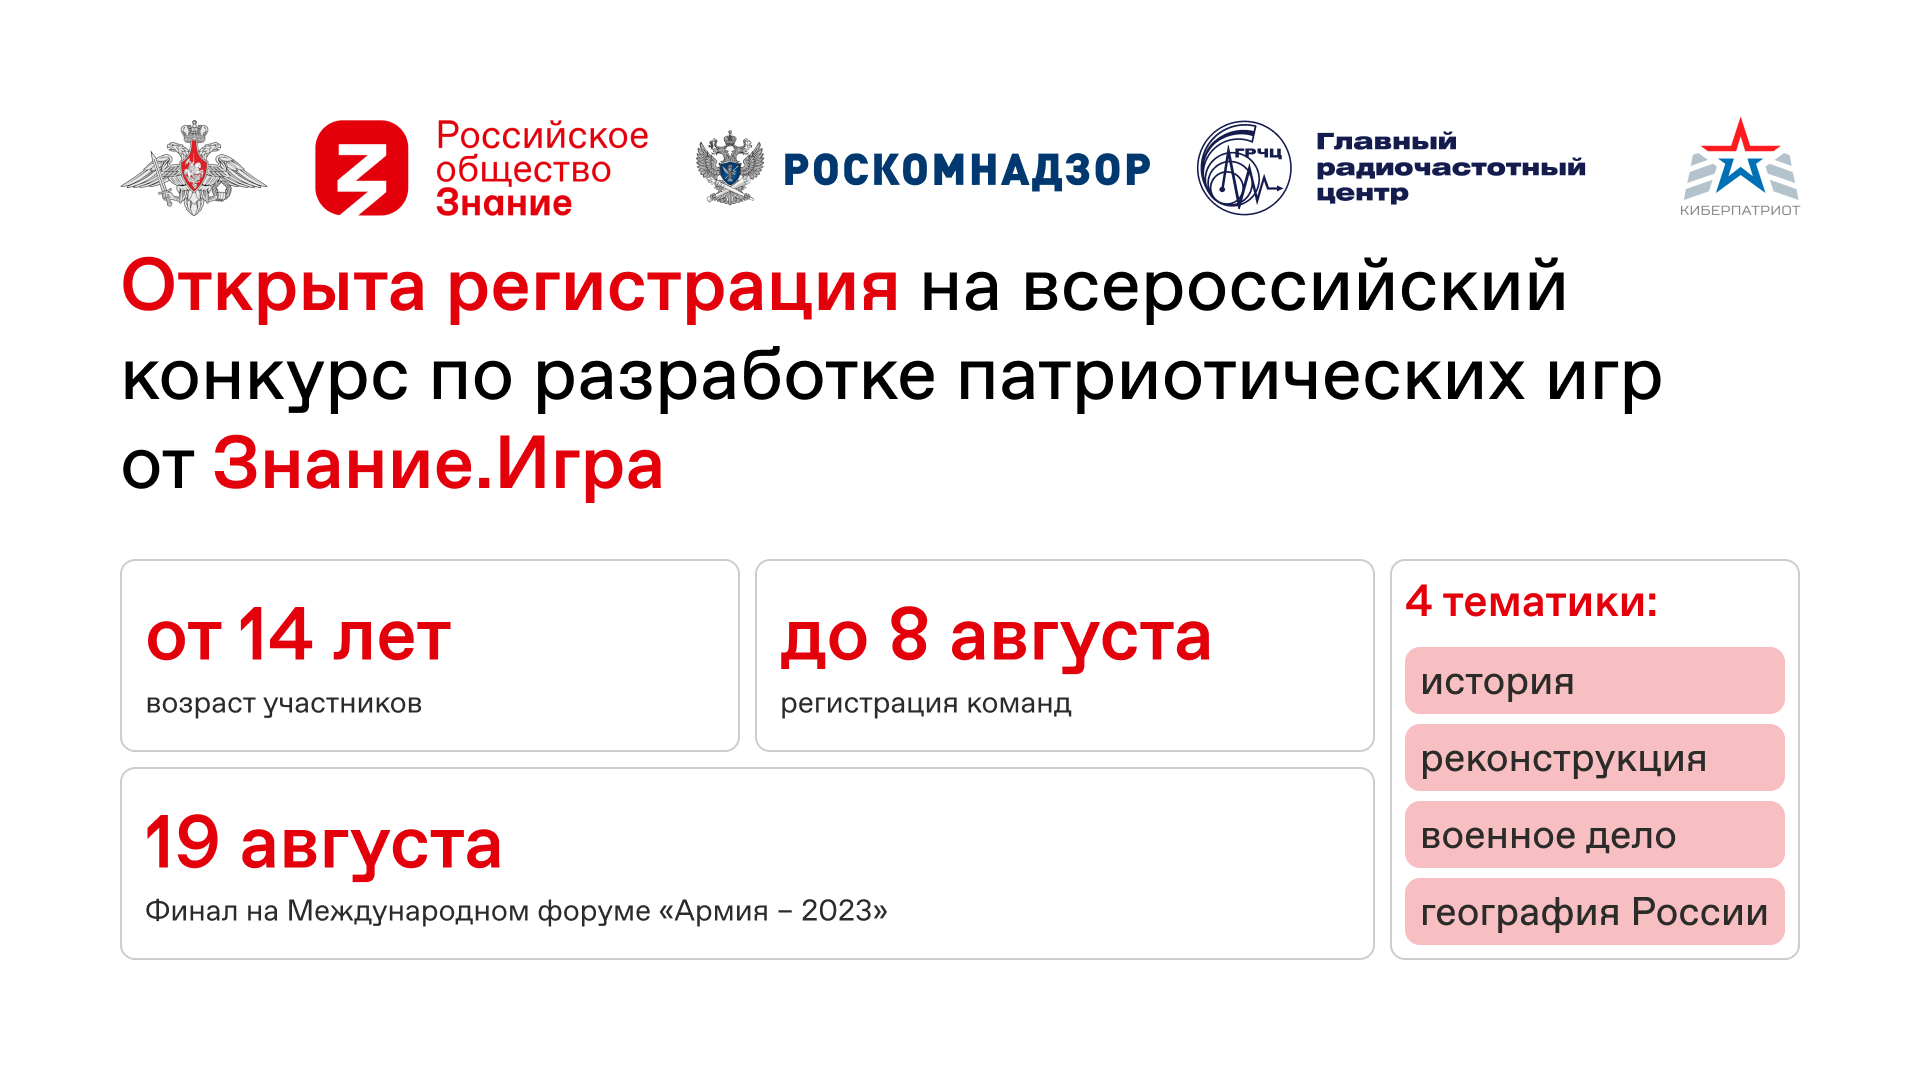 Открыта регистрация на всероссийский конкурс по разработке патриотических игр от Знание.Игра